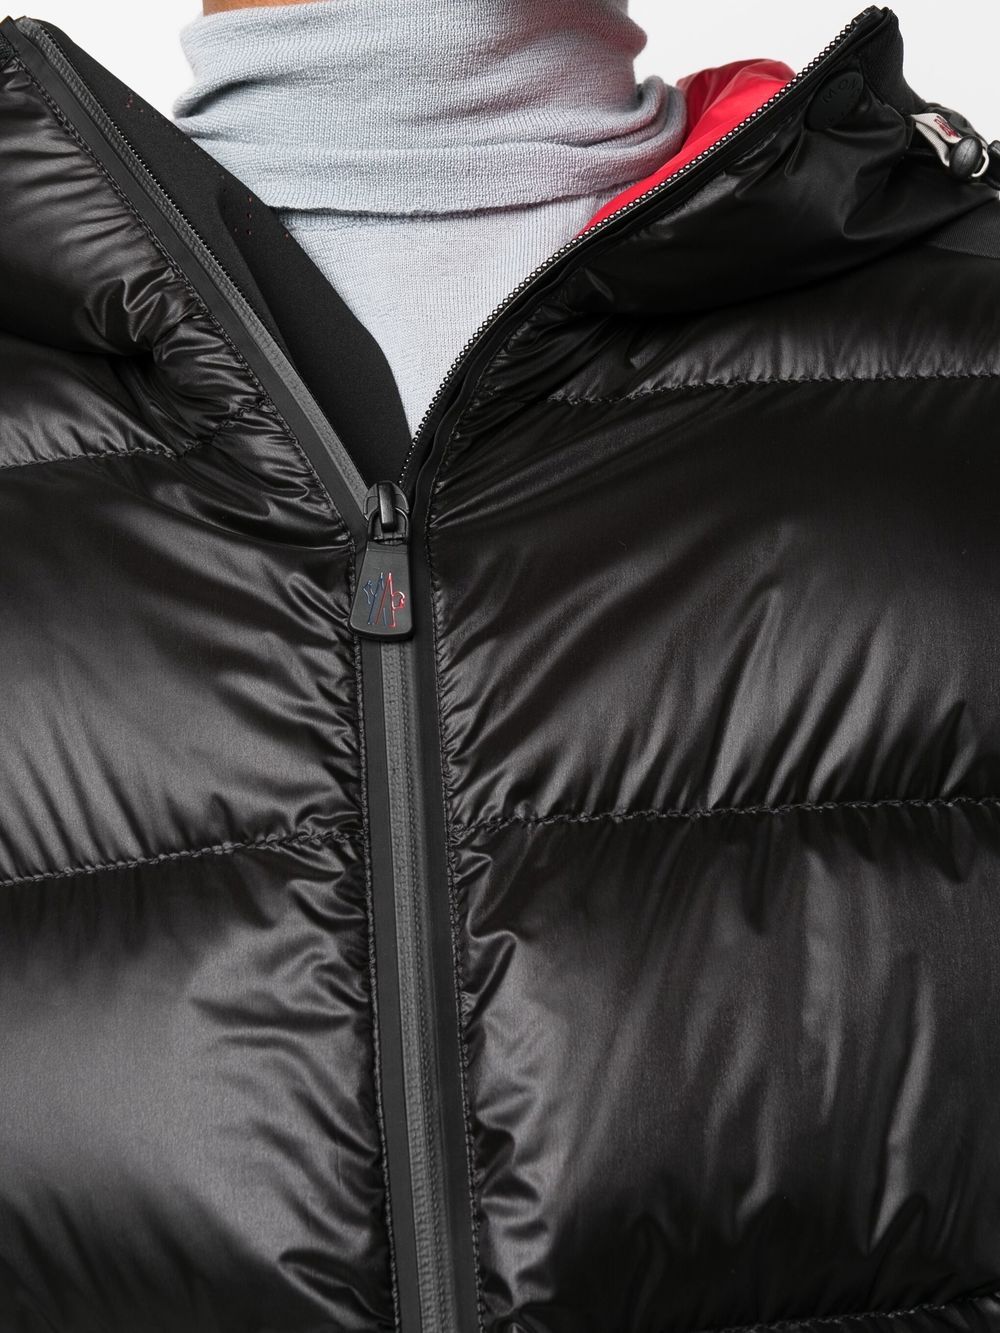 MONCLER GRENOBLE Hintertux Down Jacket Black - MAISONDEFASHION.COM